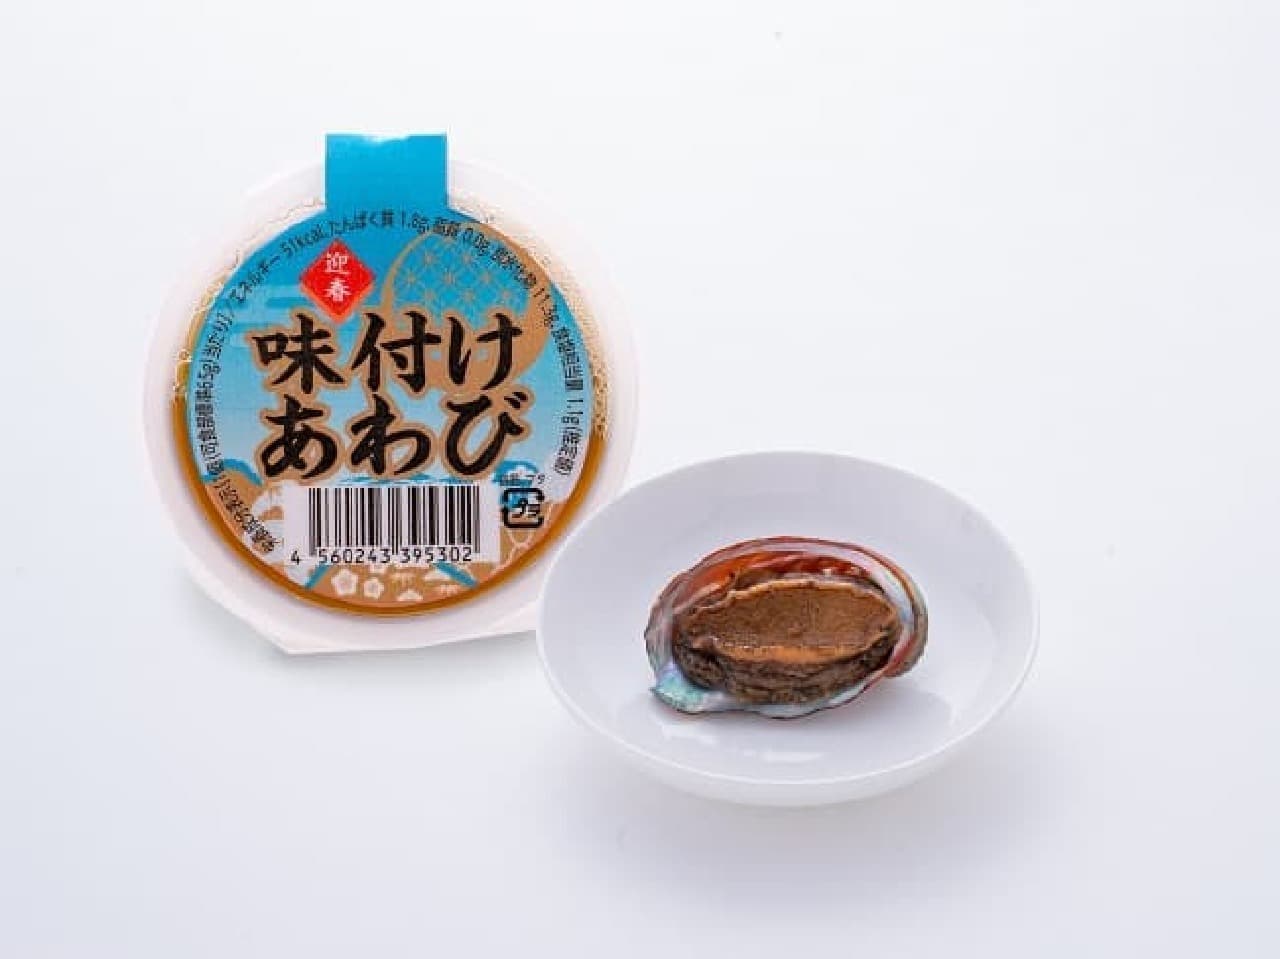 Lawson Store 100 "100 Yen Osechi" Seasoned Abalone